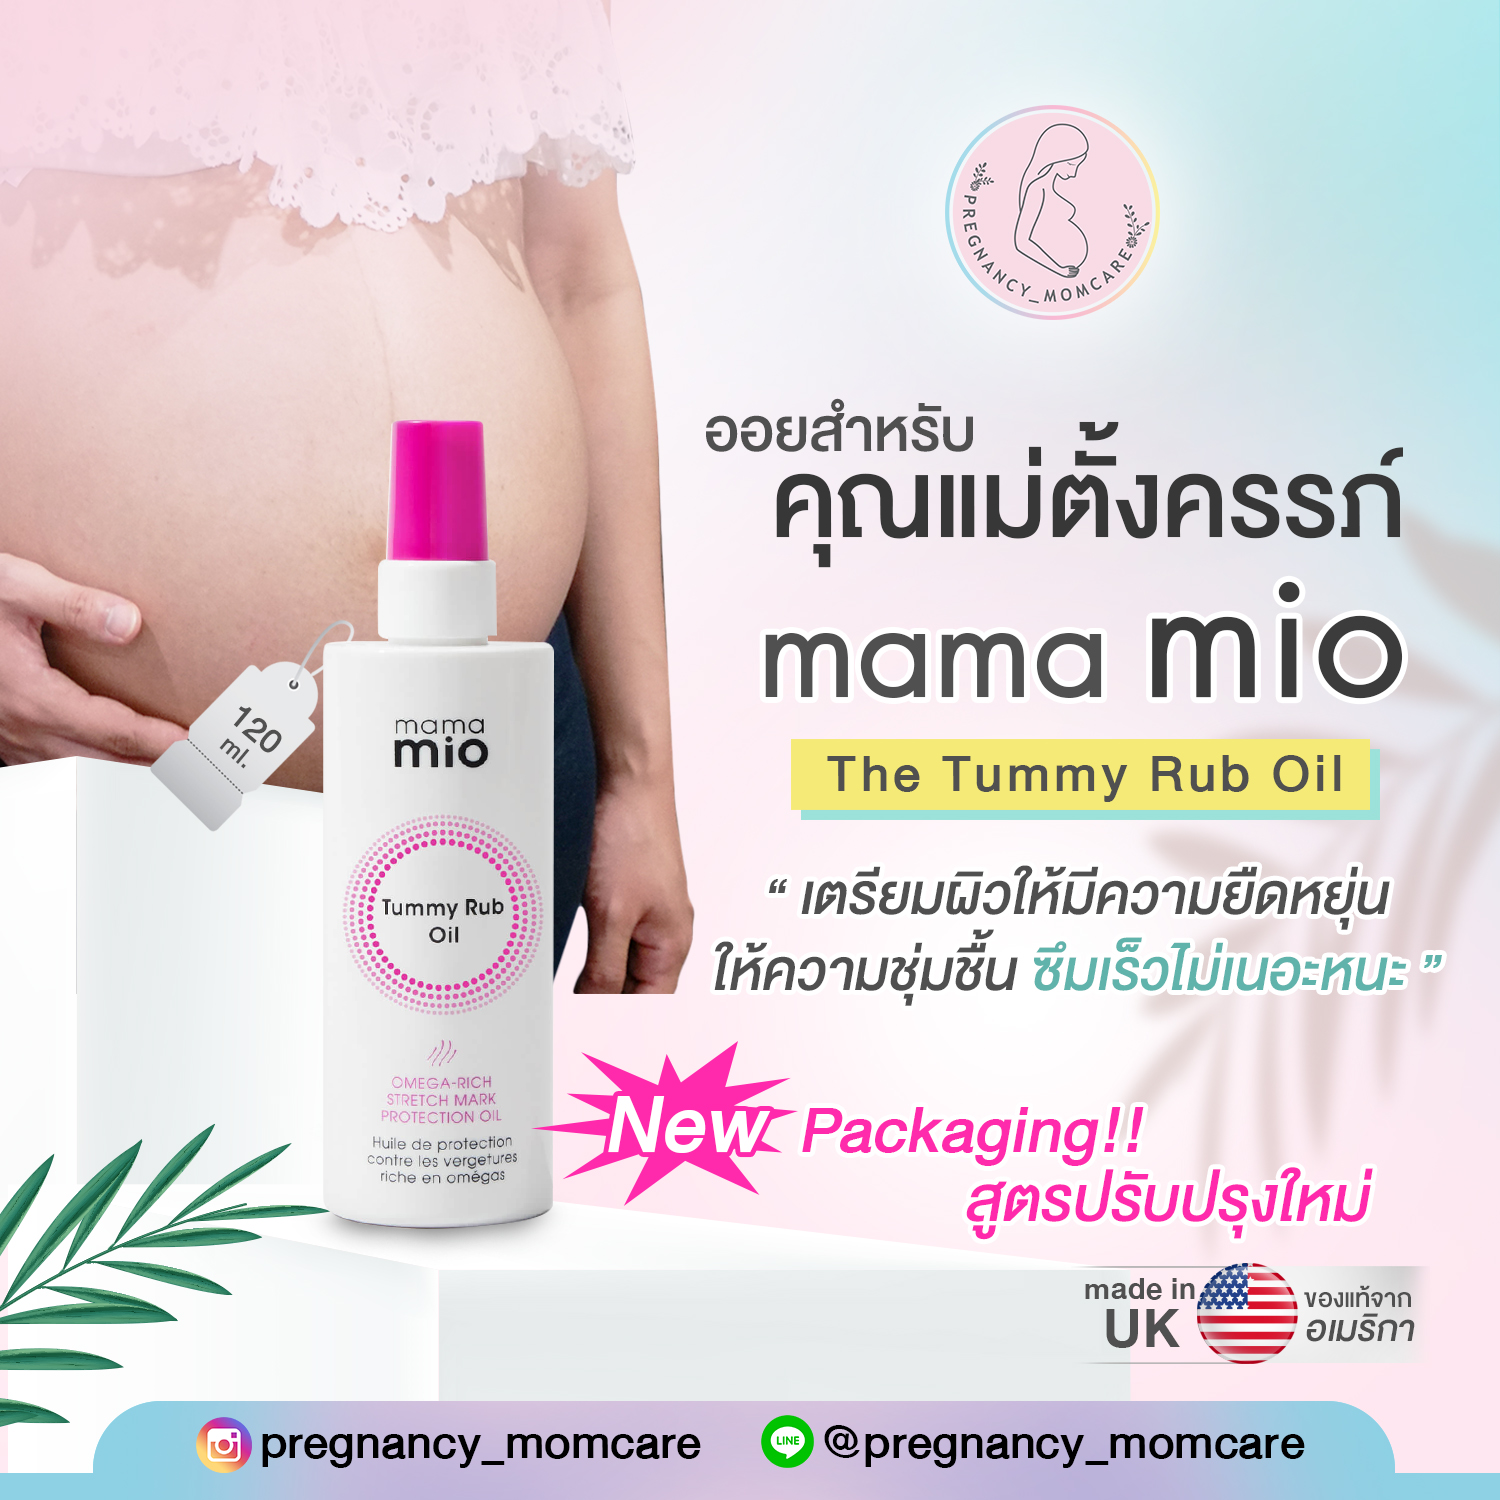 รีวิว Mama mio the tummy rub oil สูตรใหม่ ออยสำหรับคุณแม่ตั้งครรภ์